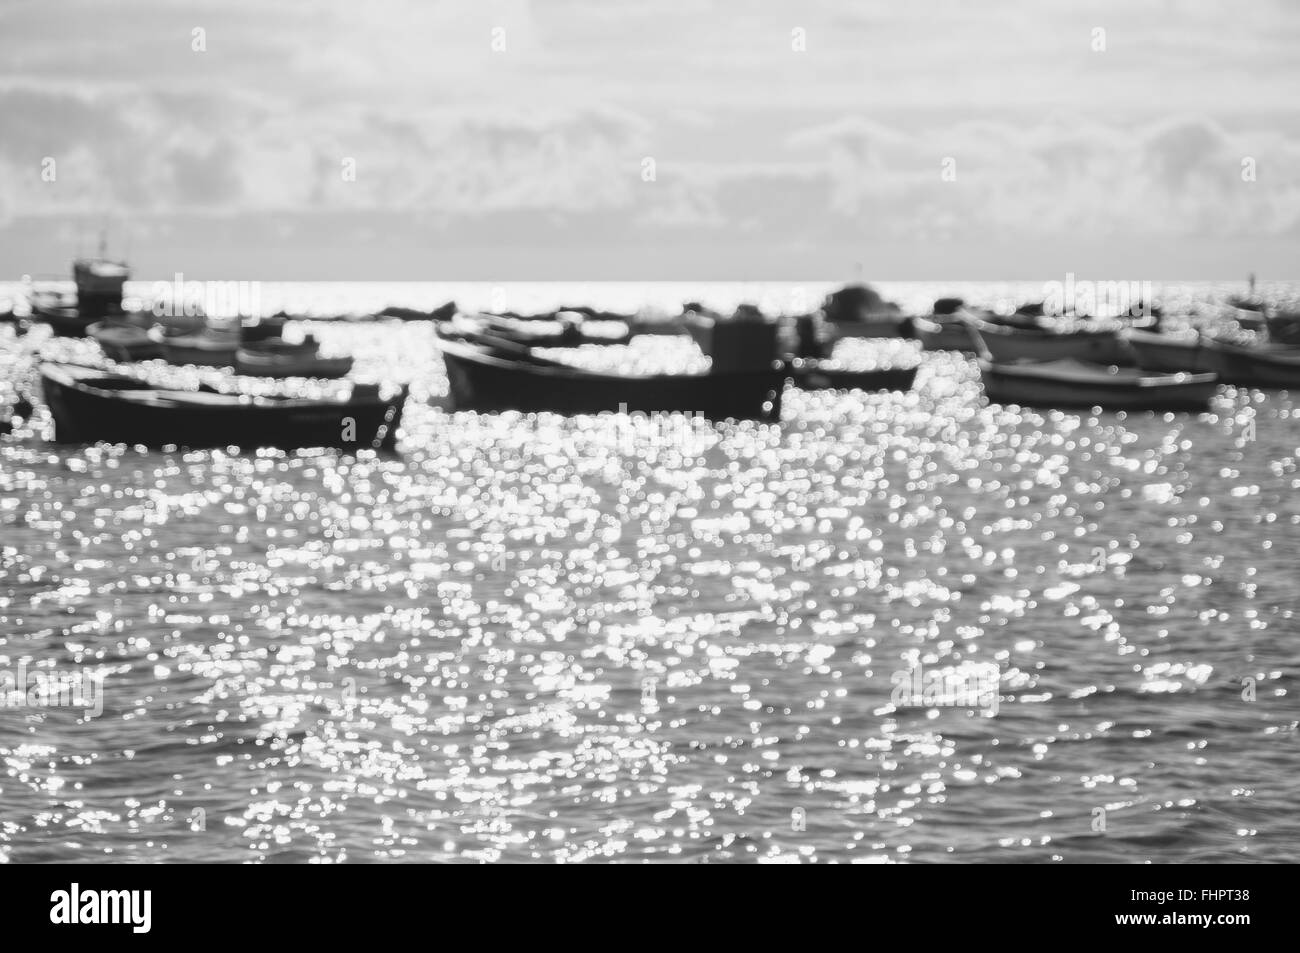 Arrière-plan flou de bateaux contre la lumière du soleil et brille sur la surface de l'eau, image en noir et blanc Banque D'Images